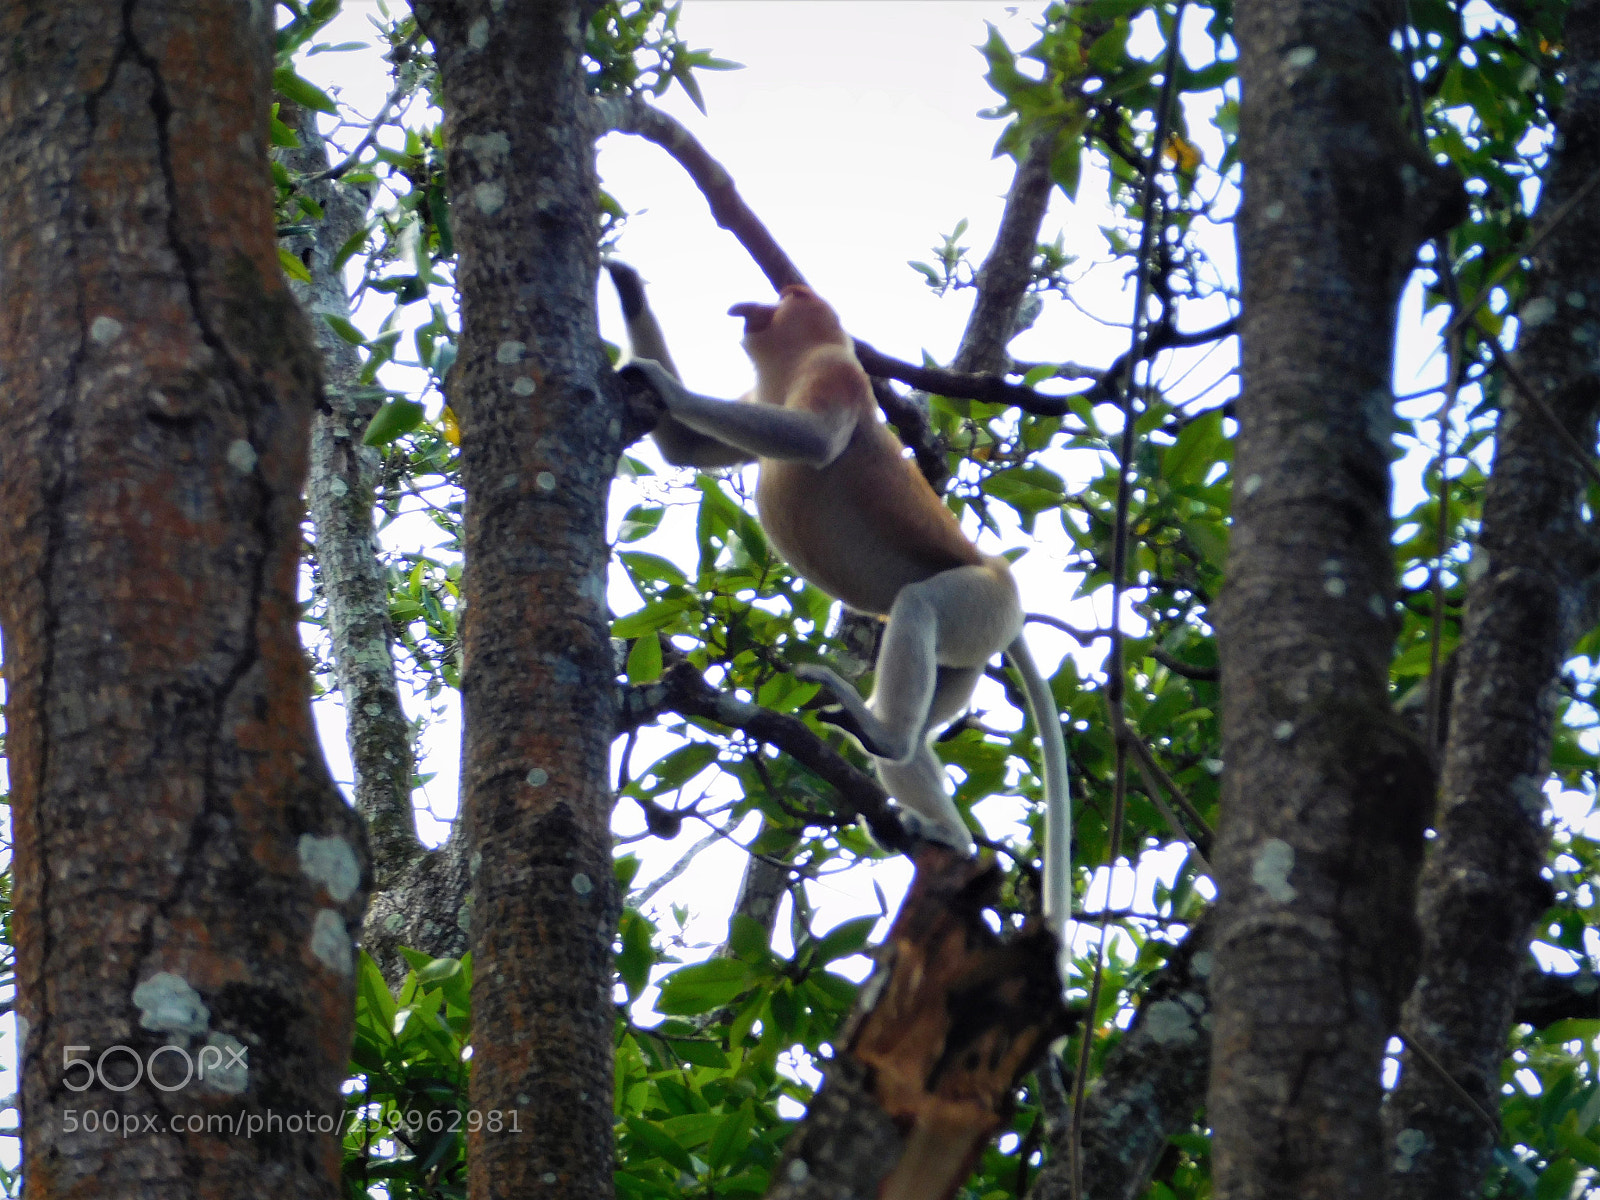 Nikon Coolpix L840 sample photo. Proboscis monkey photography